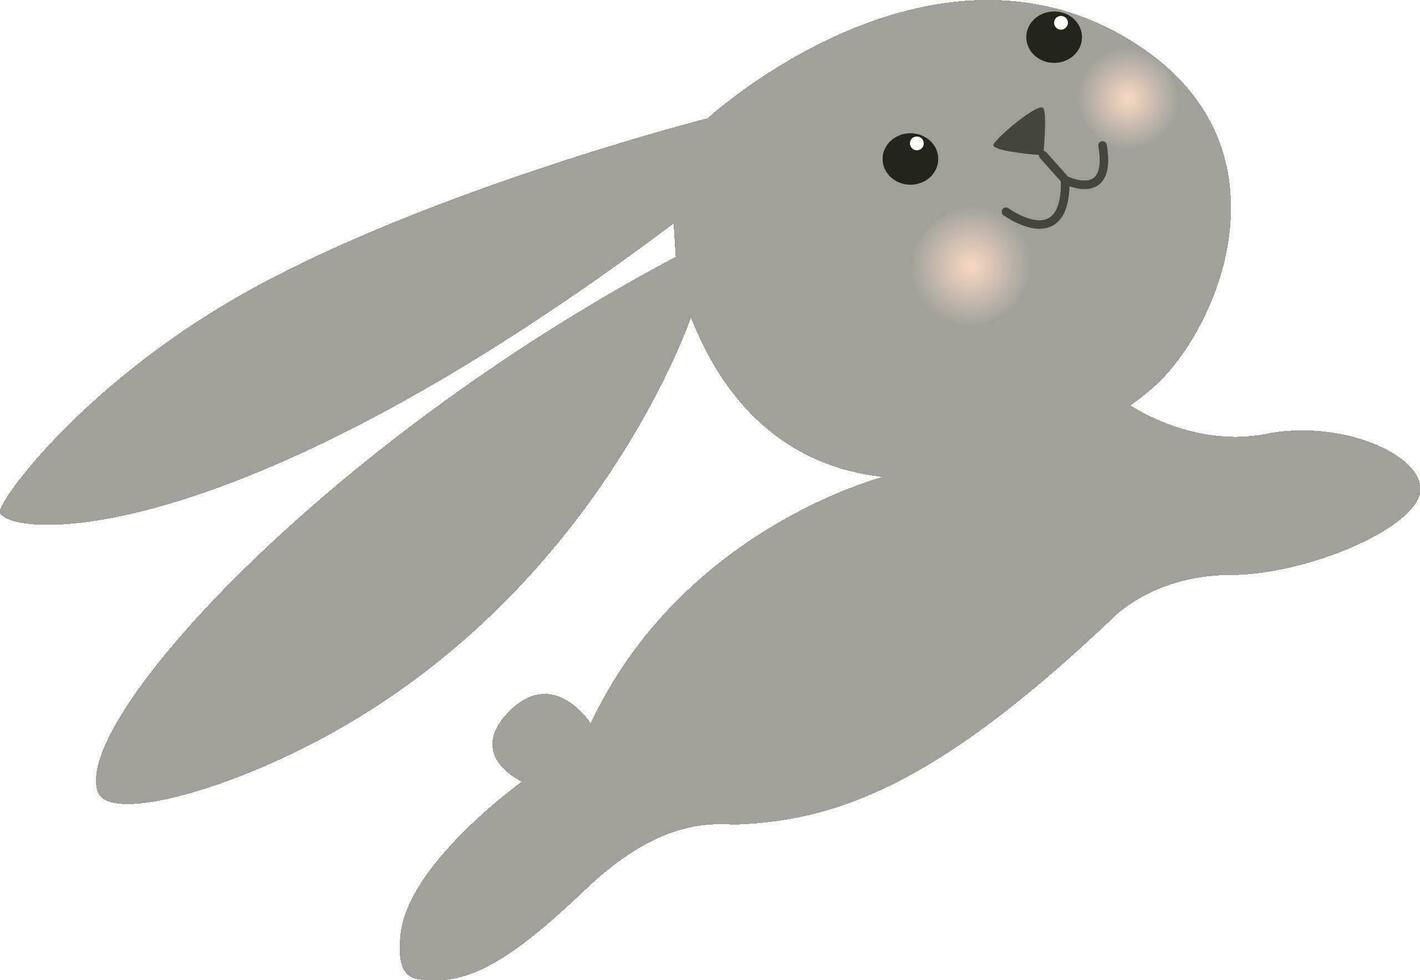 schattige konijntje illustratie vector